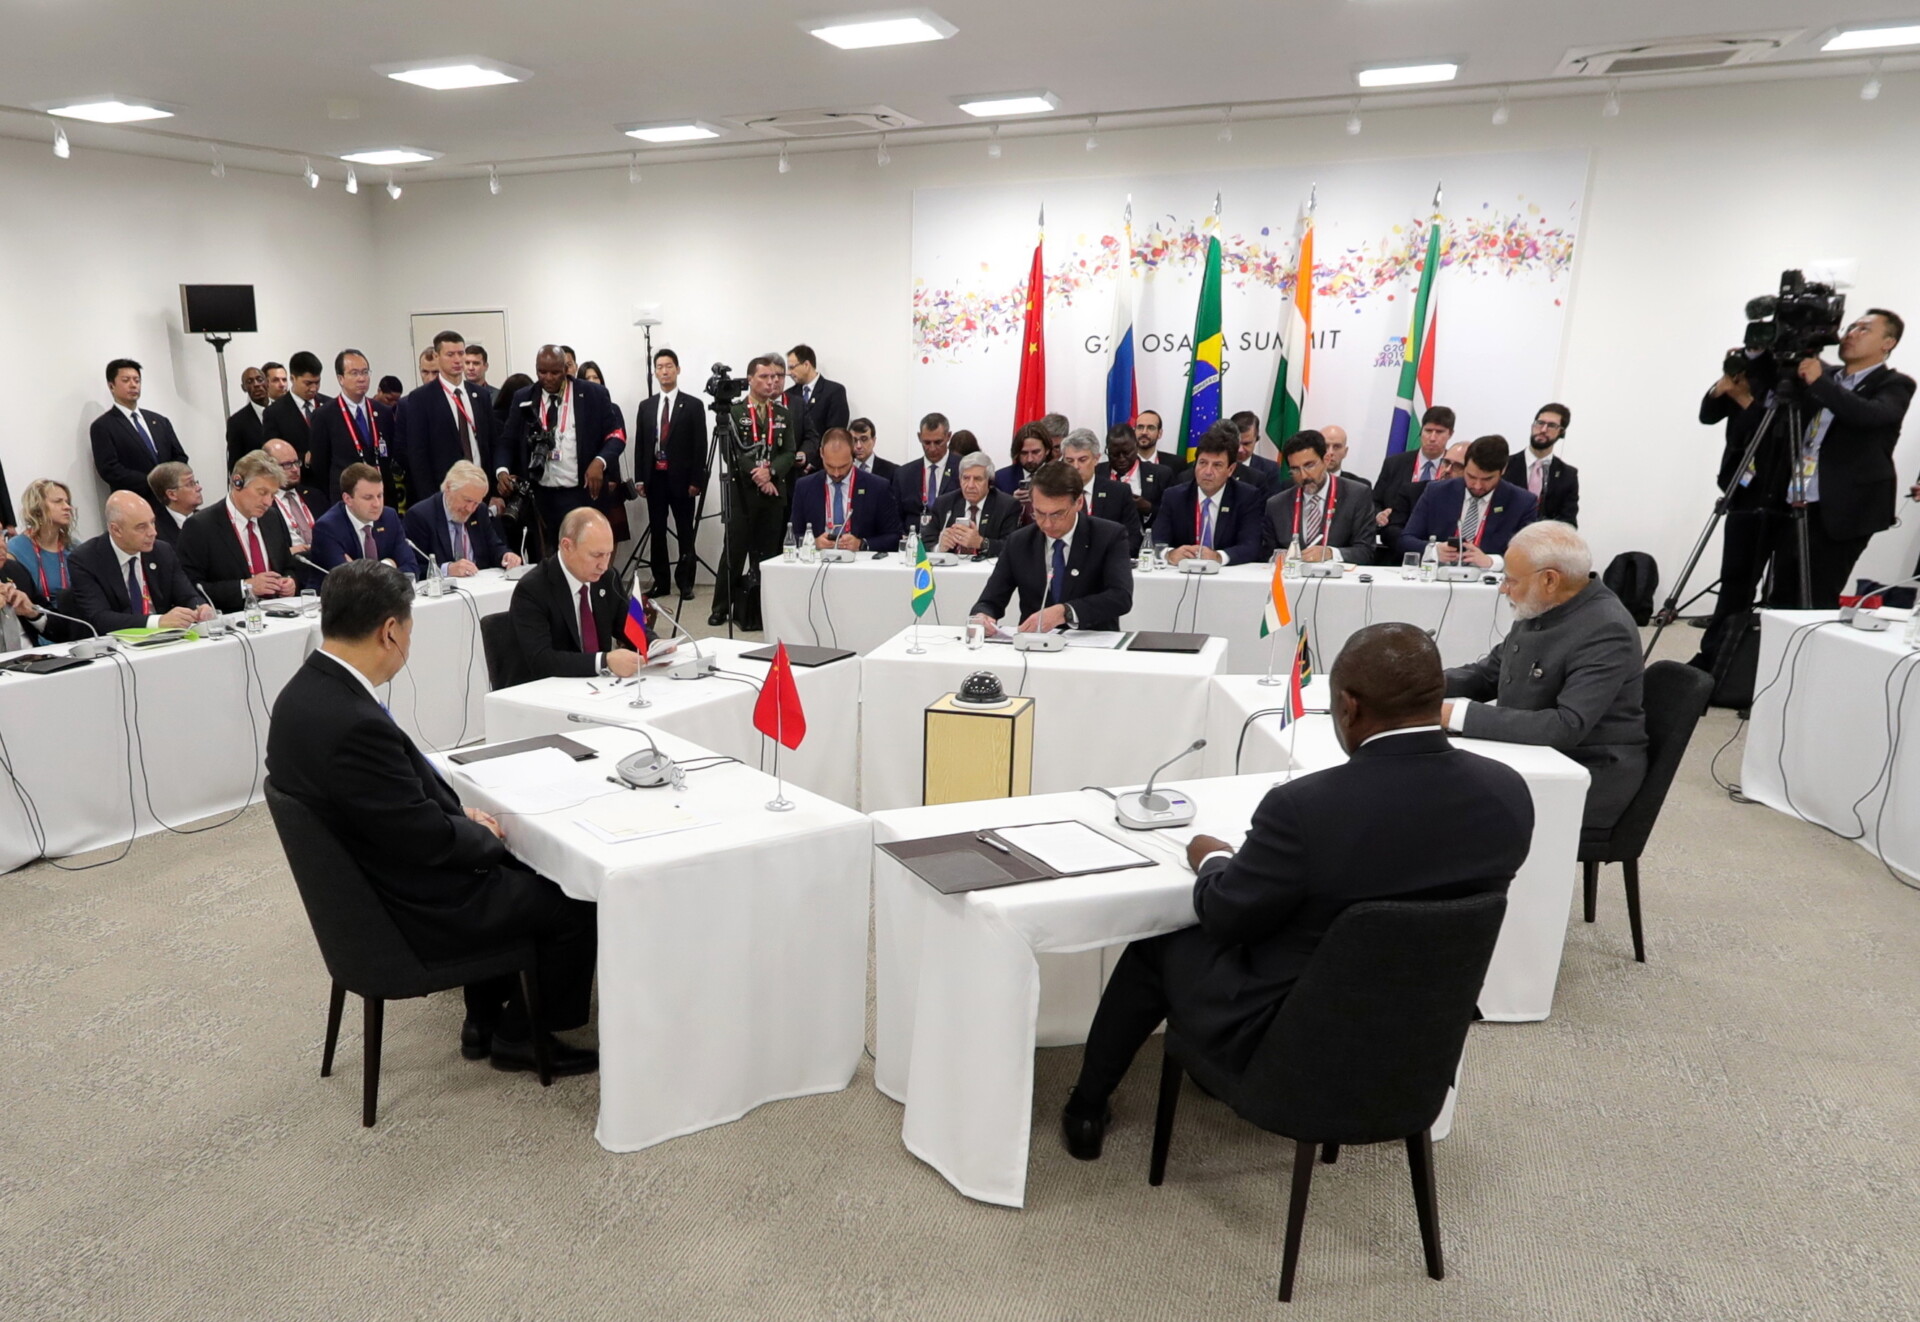 Σύνοδος Κορυφής των BRICS © EPA/MICHAEL KLIMENTYEV/SPUTNIK/KREMLIN